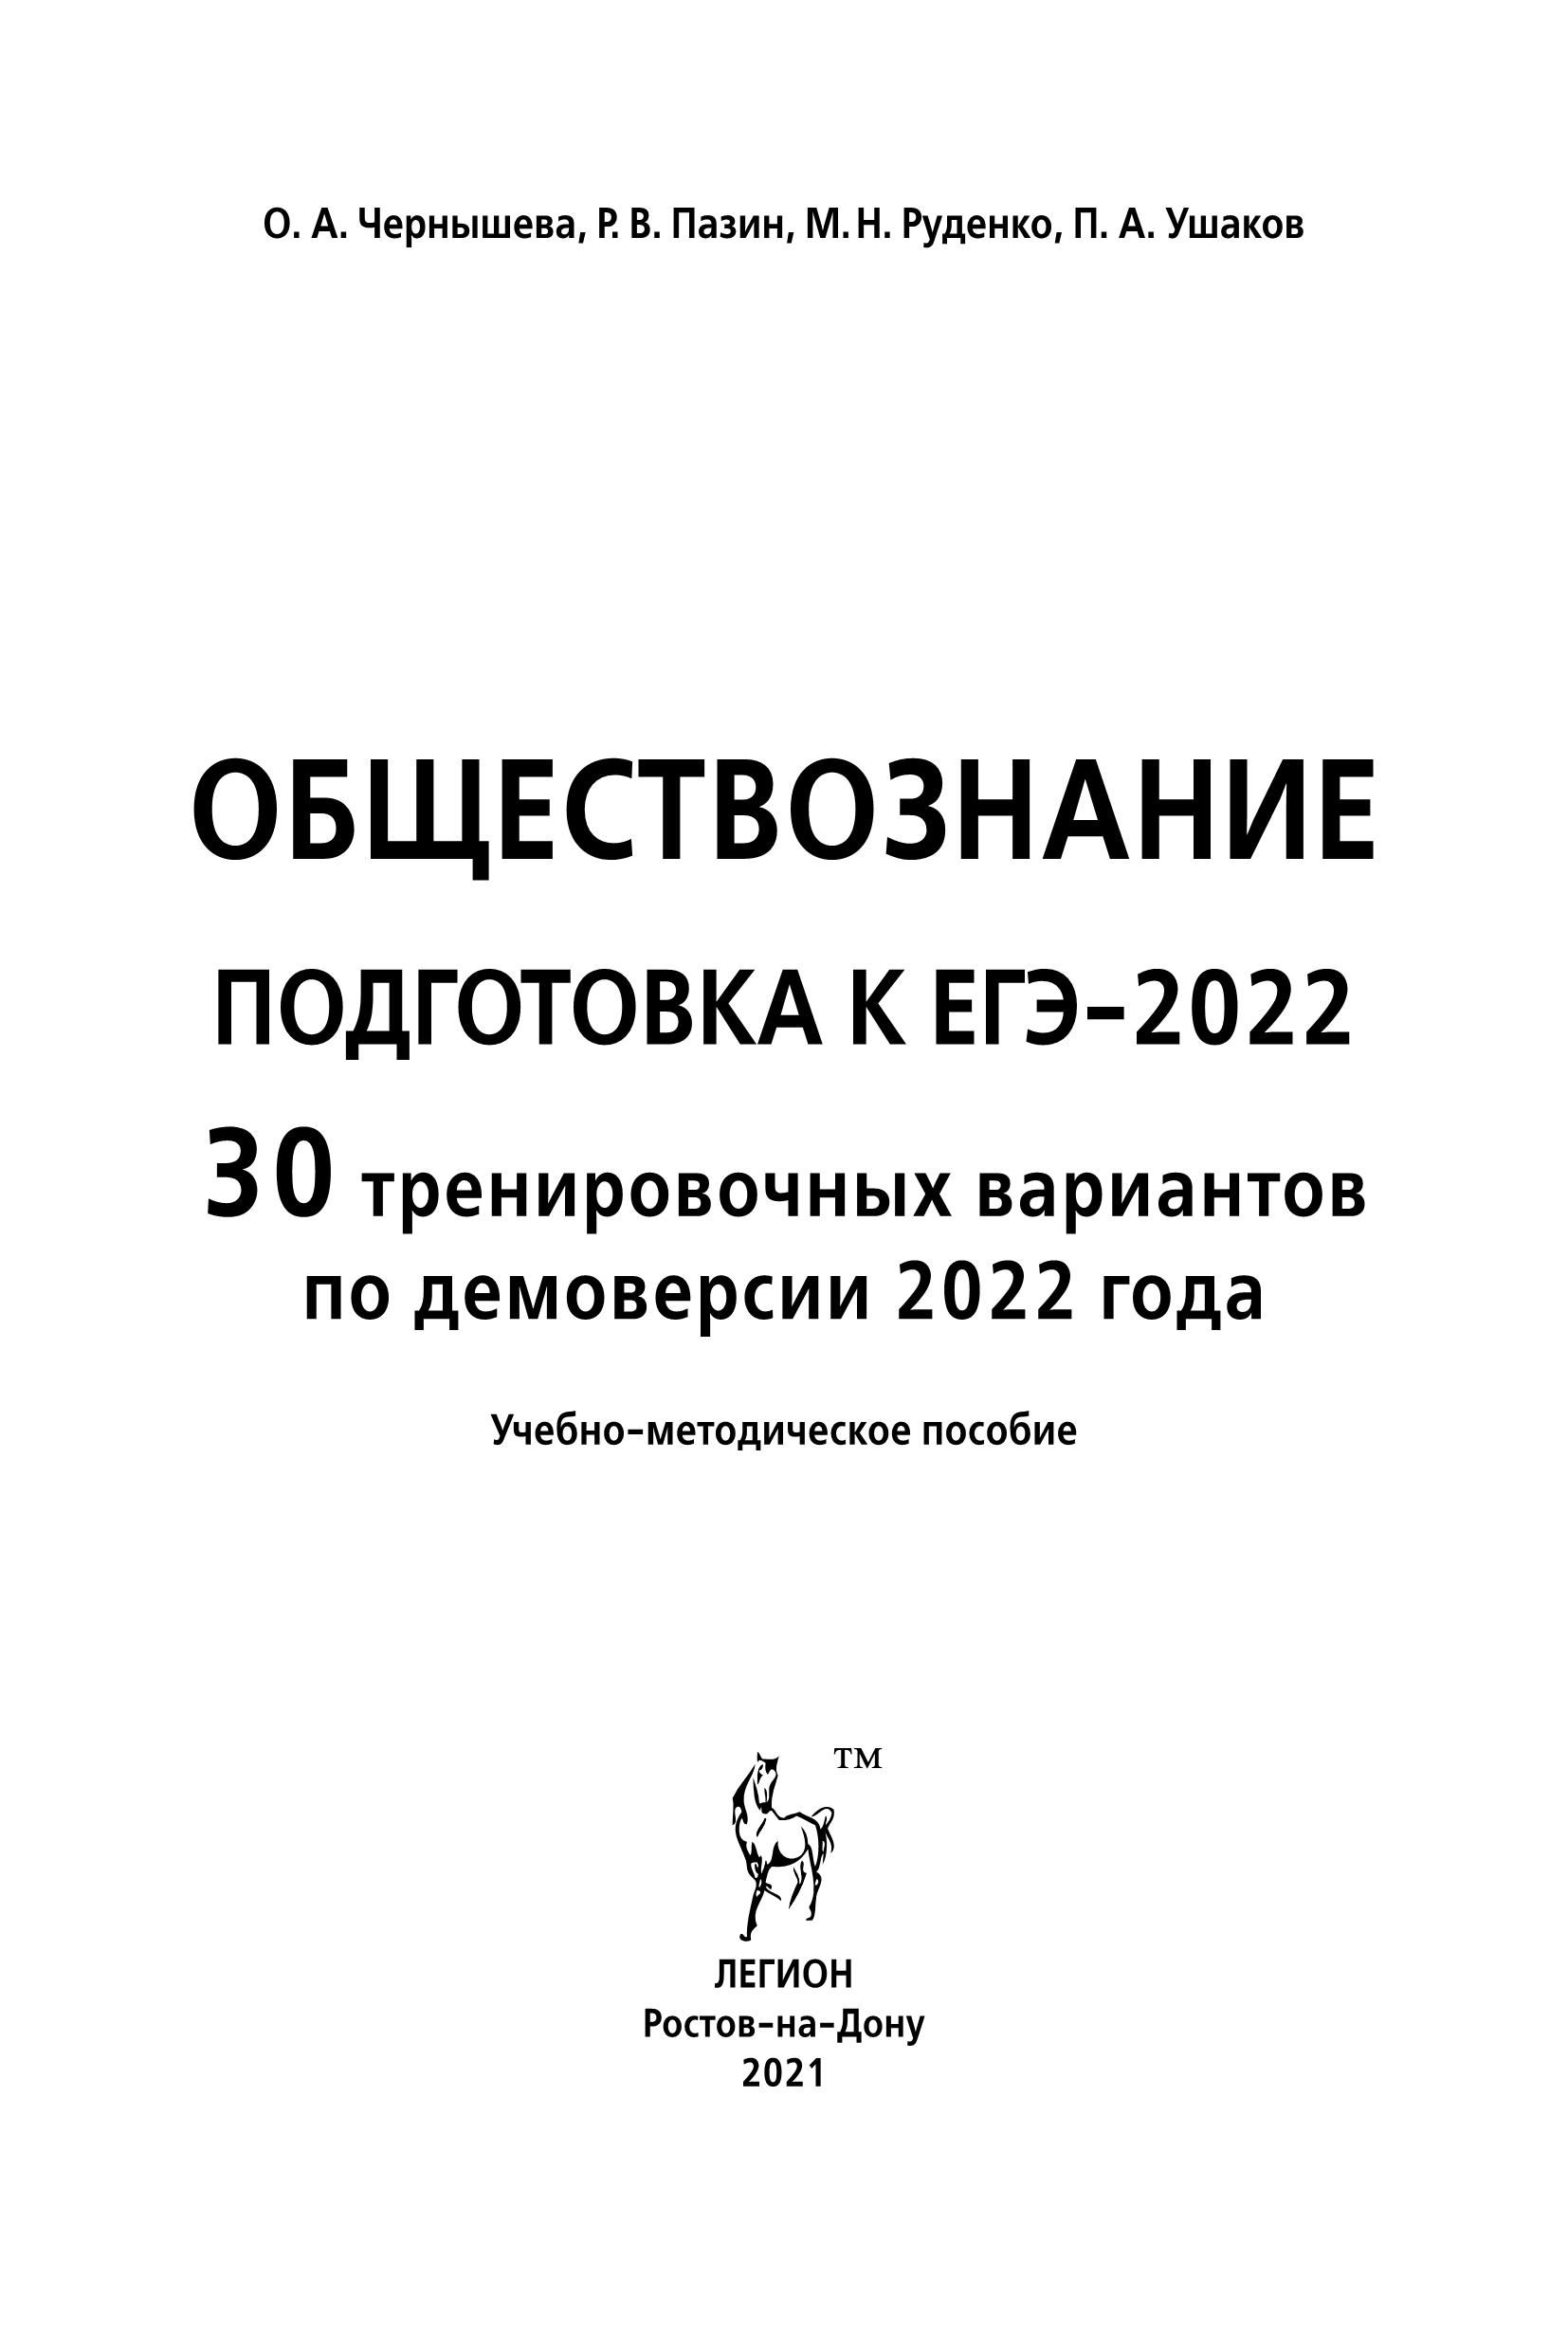 Обществознание. Подготовка к ЕГЭ-2022. 11 класс. 30 тренировочных вариантов по демоверсии 2022 года